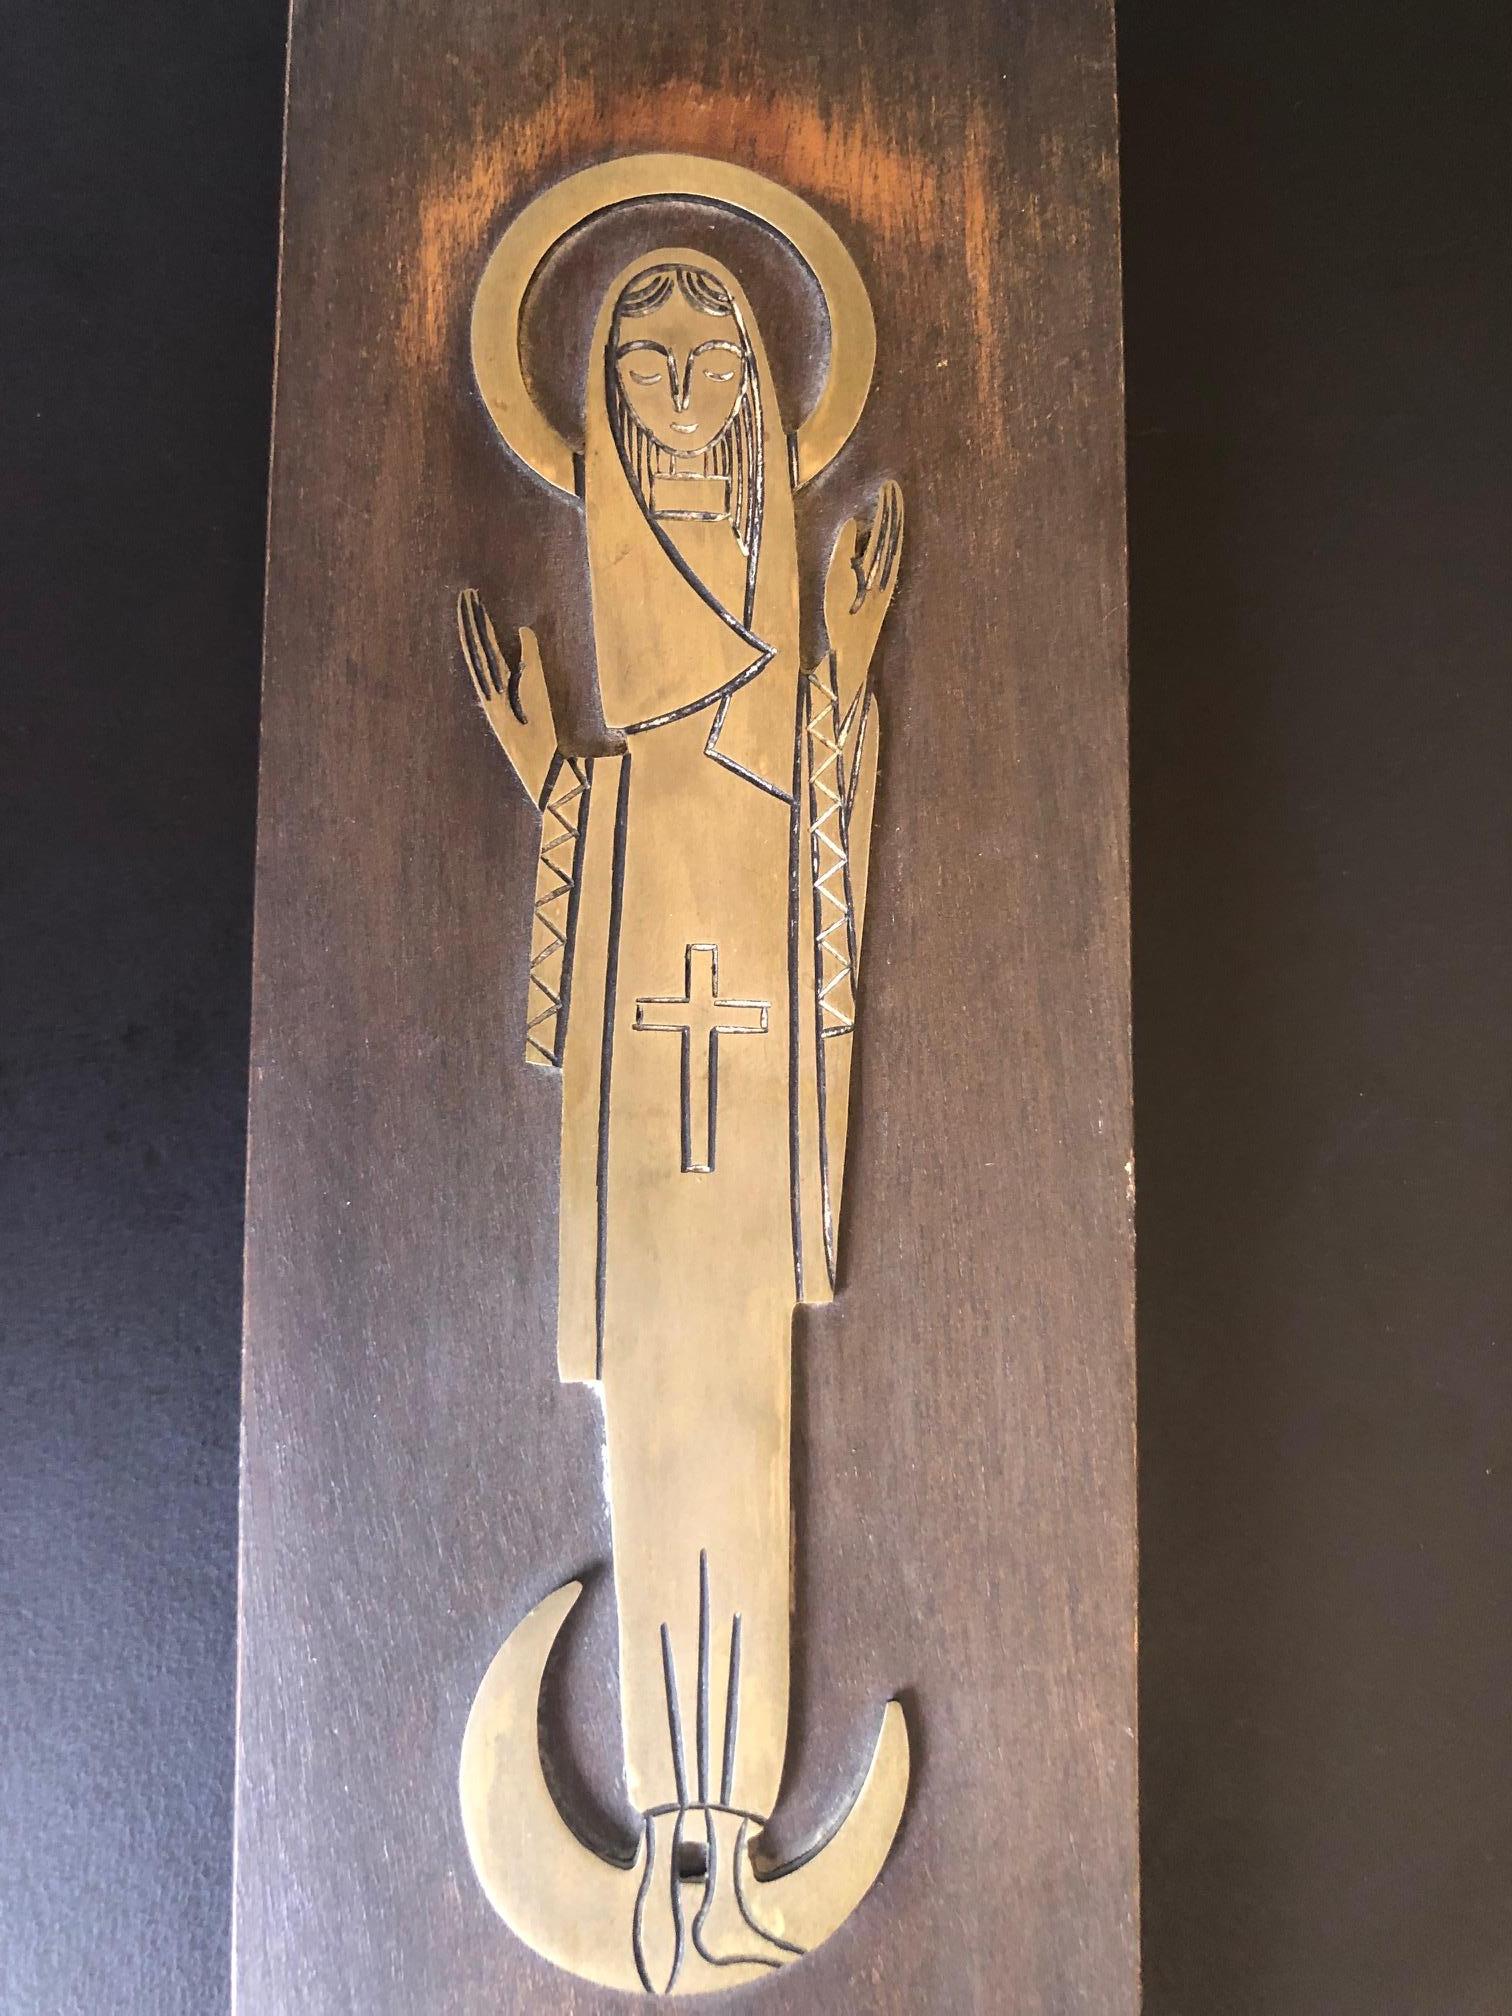 Une très belle et simple plaque ou icône religieuse de Marie, la mère de Jésus. La pièce est un bas-relief en laiton sur une plaque de bois, vers les années 1960.